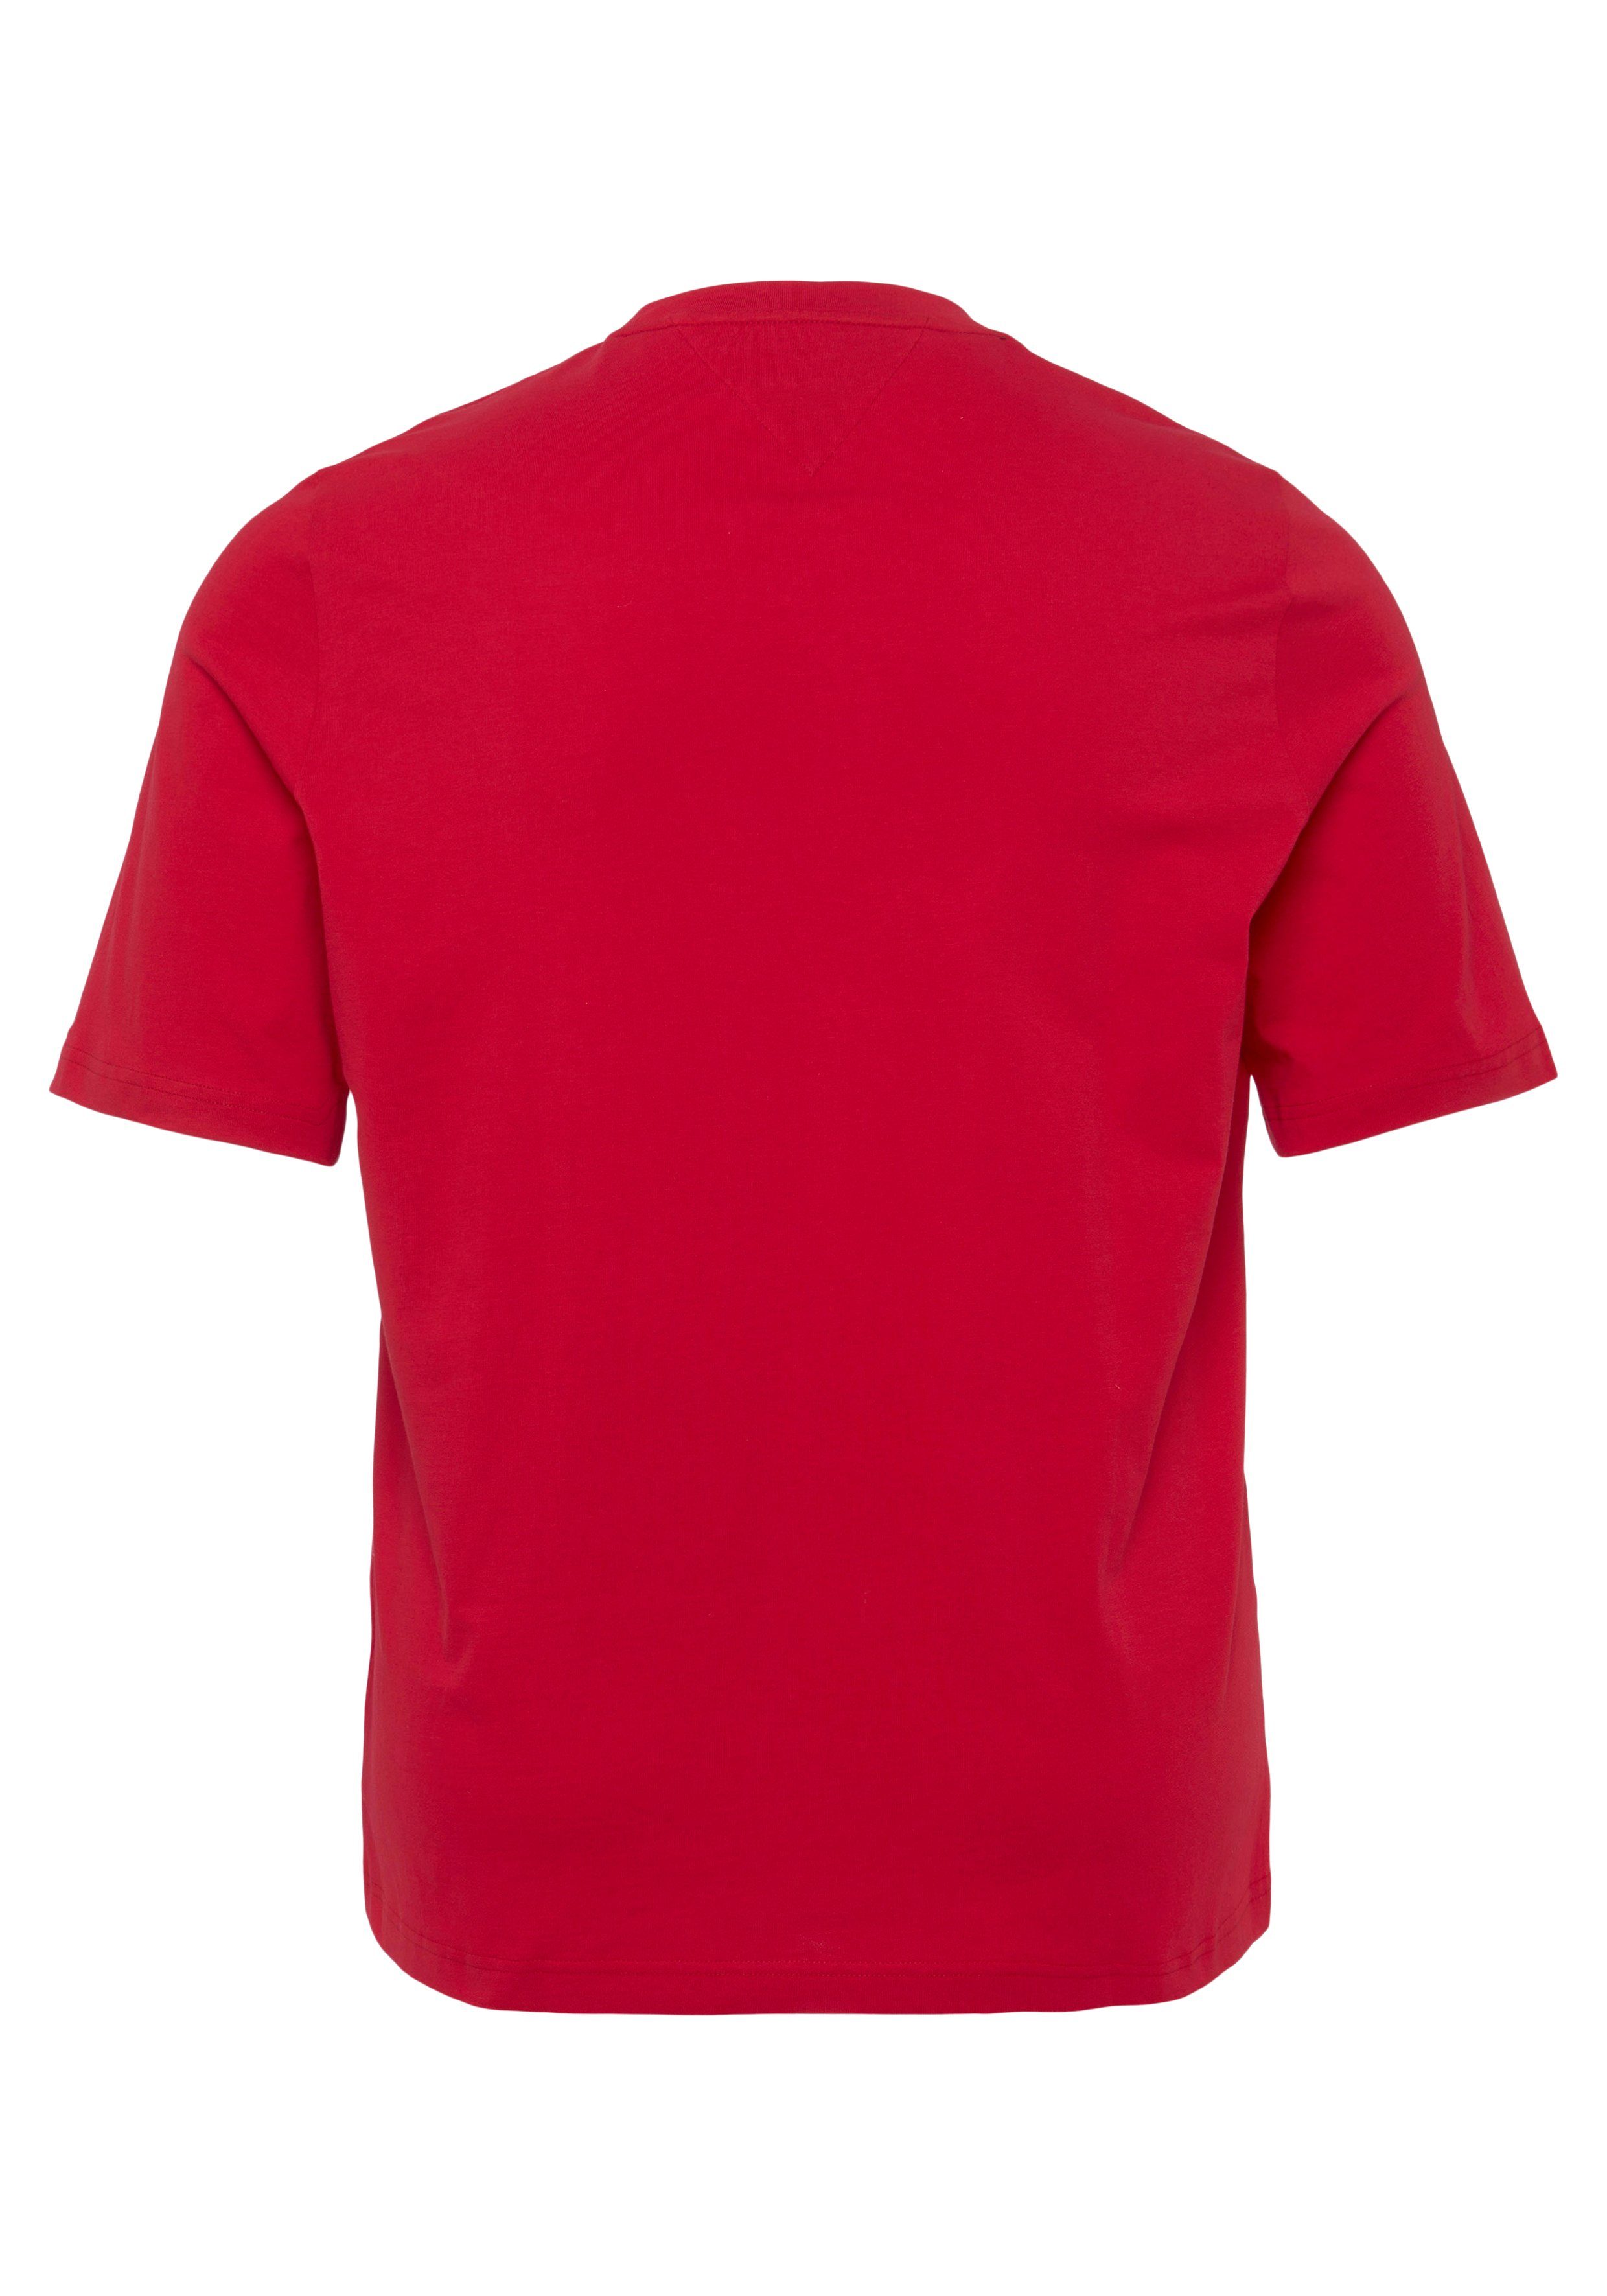 der Brust Hilfiger T-Shirt LOGO rot BT-TOMMY Tommy Tall Big Tommy mit Hilfiger TEE-B & Logoschriftzug auf